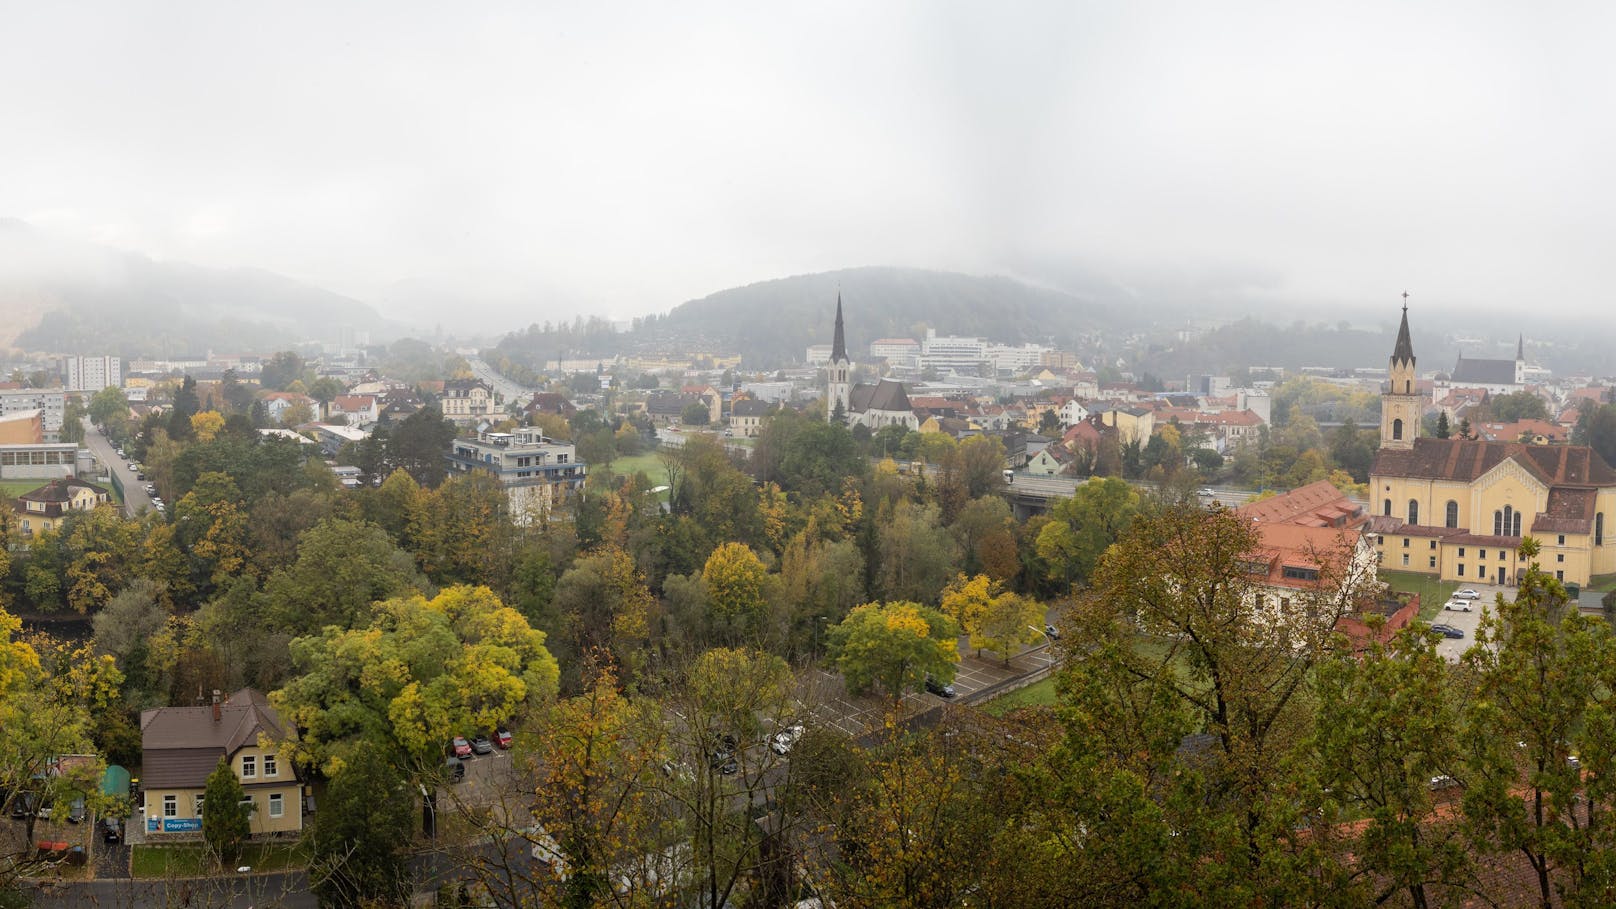 "ZiB" startet, plötzlich bebt Erde in der Steiermark